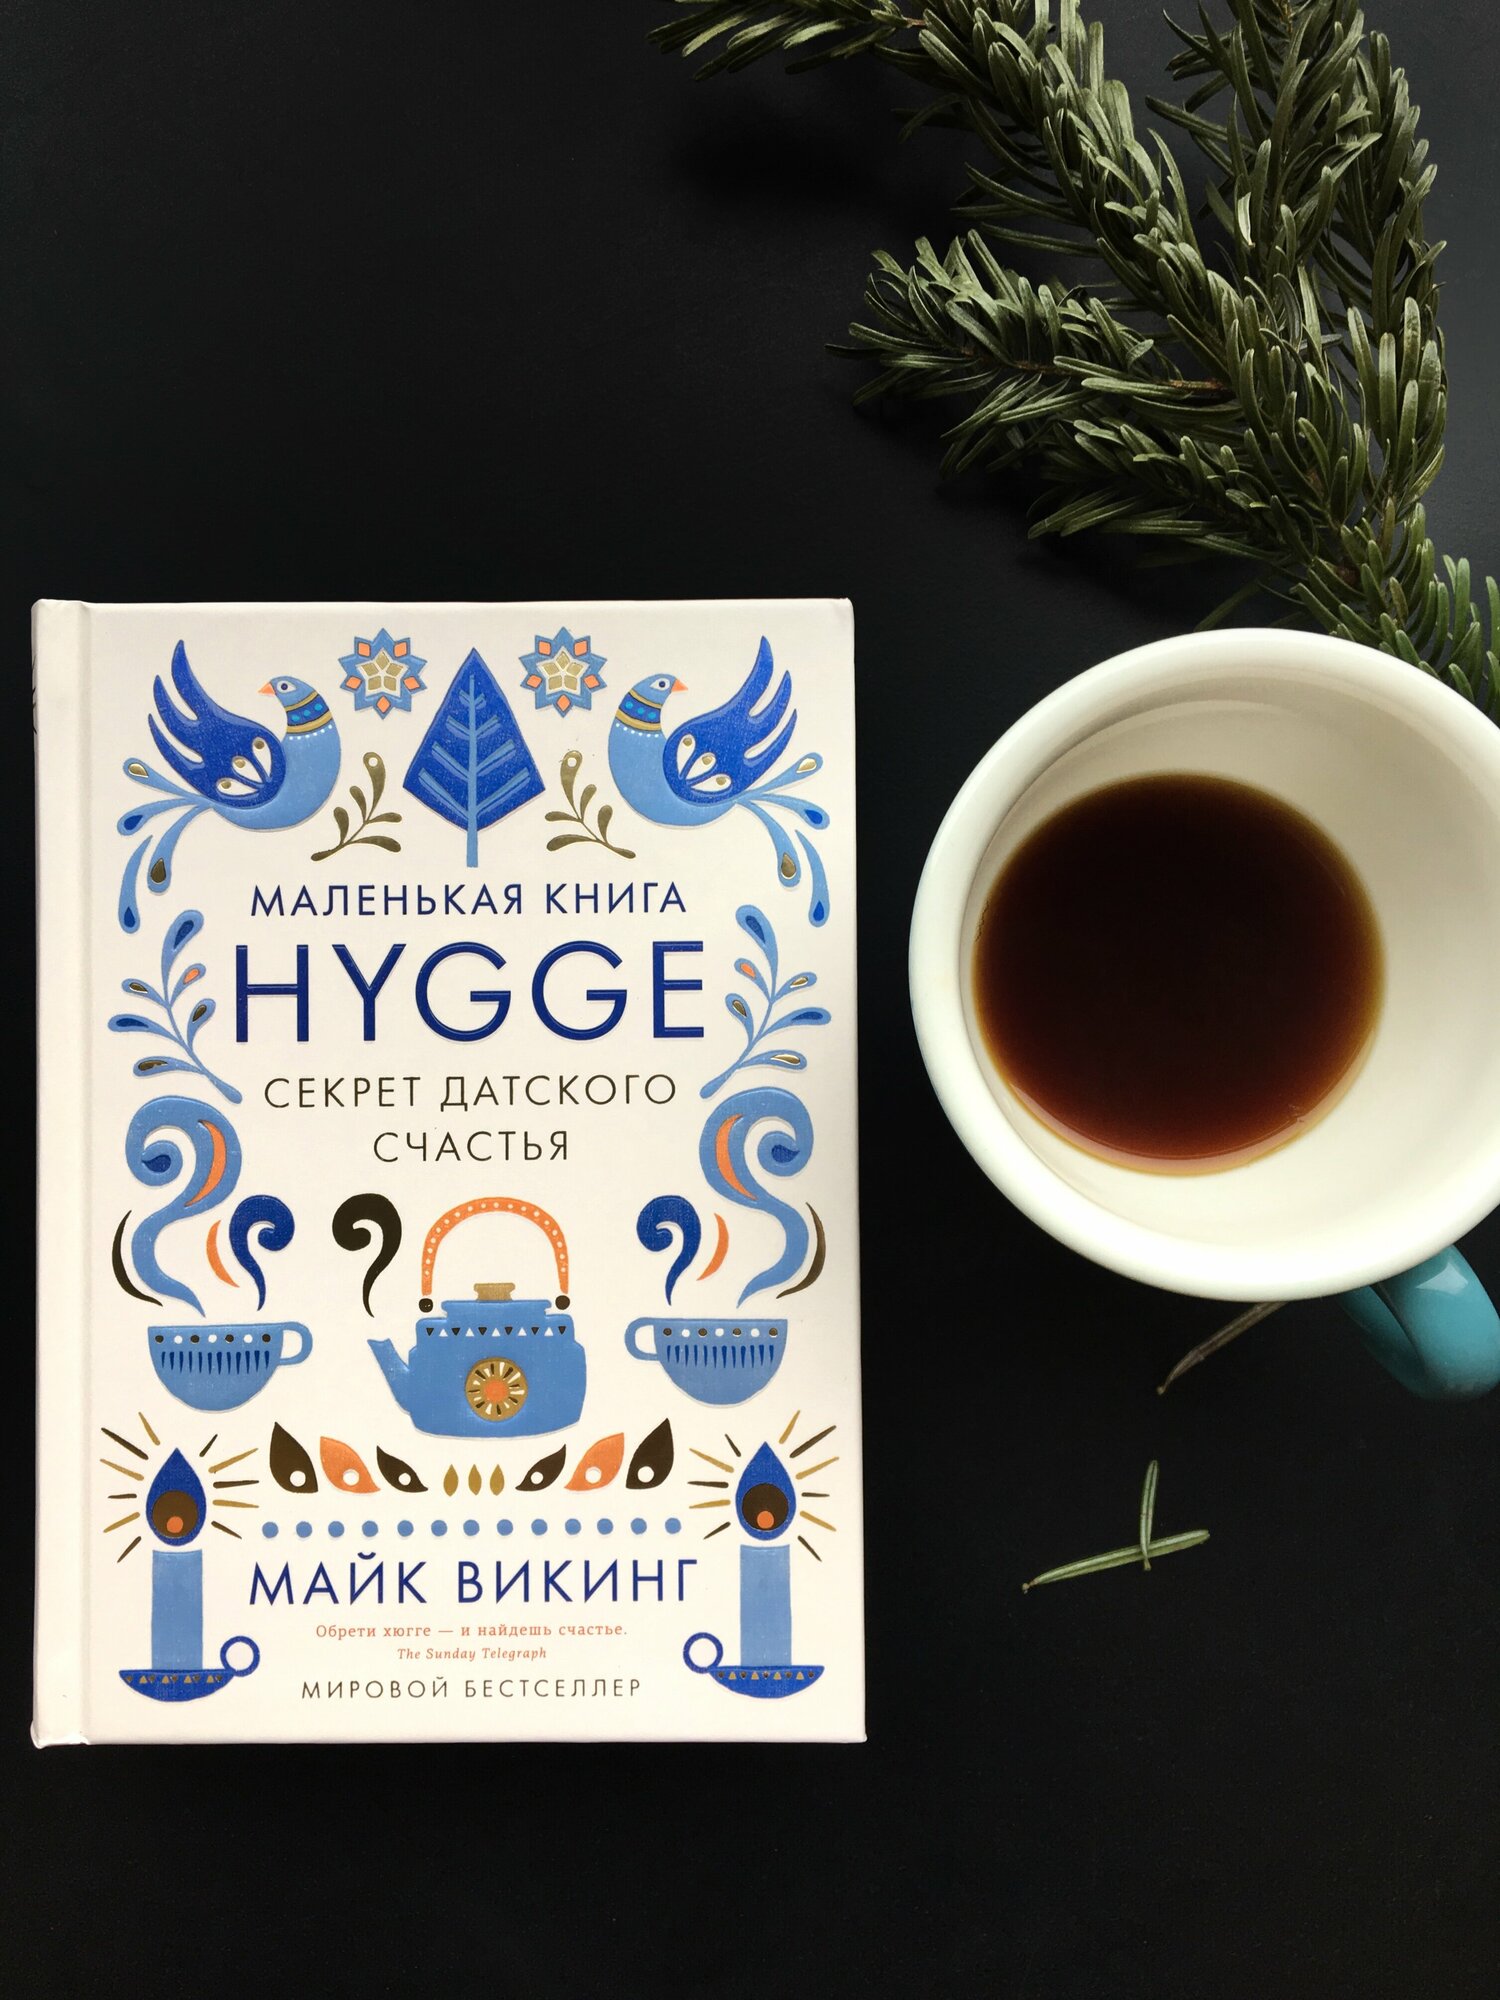 Маленькая книга Hygge. Секрет датского счастья - фото №2